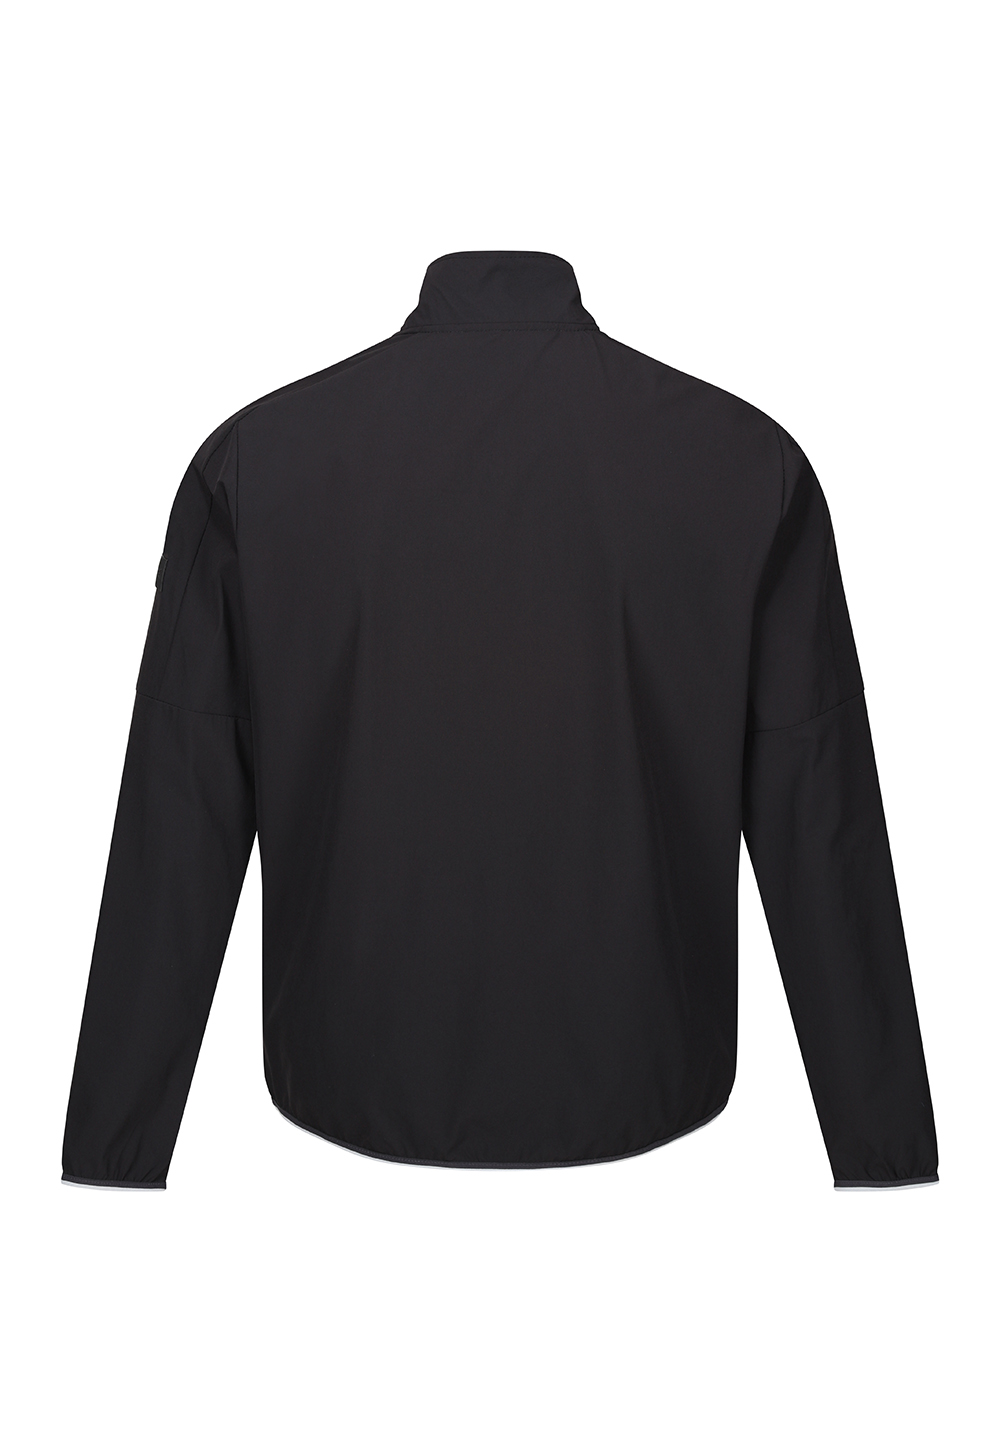 Regatta Herren Prestfield leichte Wasserabweissende dünne Jacke RML256 black